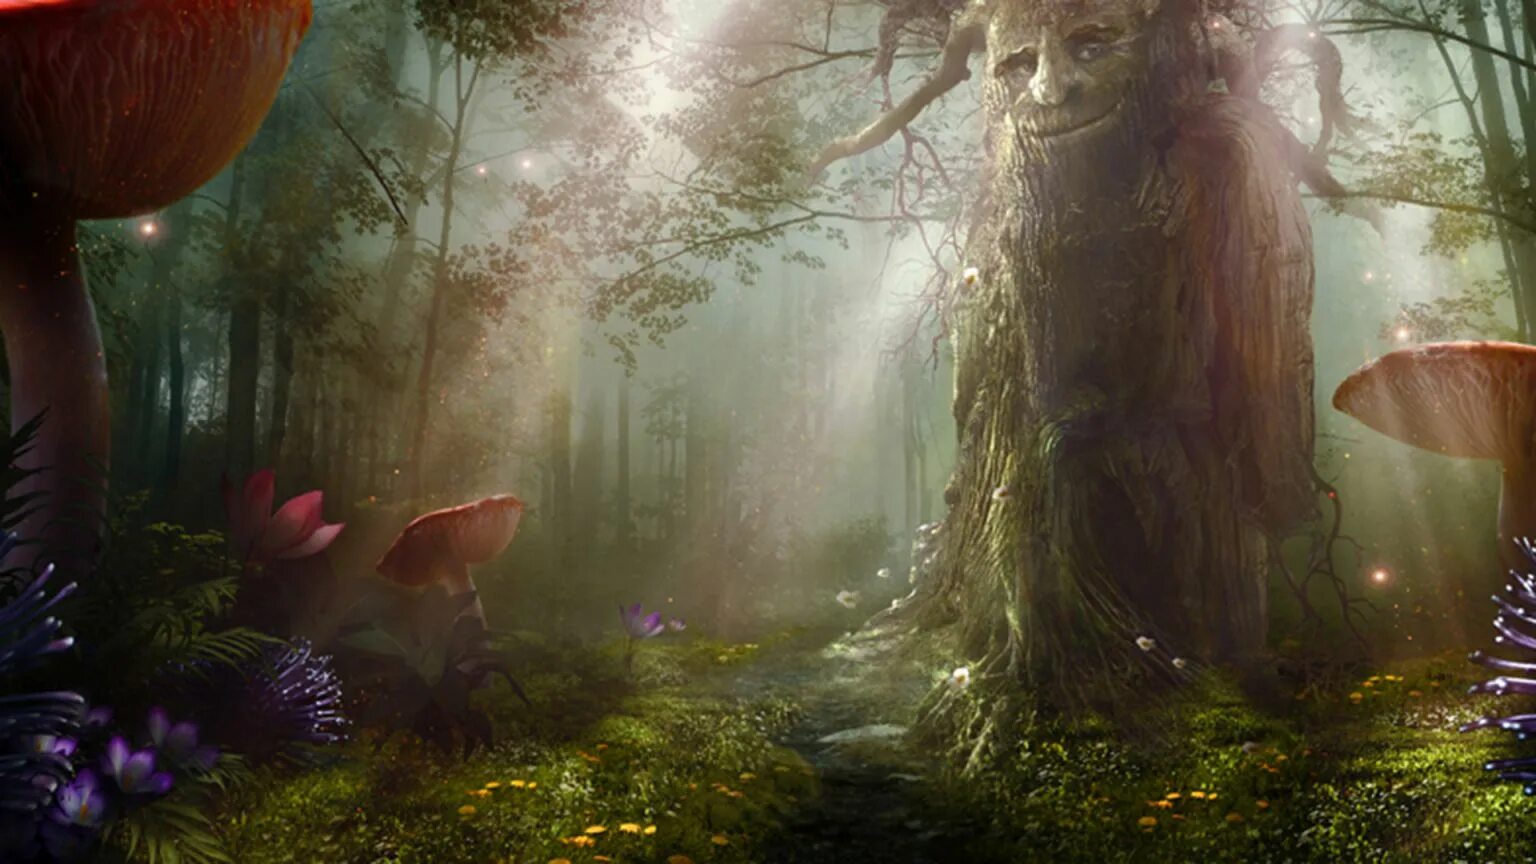 «Зачарованный лес» («Enchanted Forest»). Зачарованный лес (чудесный лес) (1986). Алиса в стране чудес таинственный лес. Волшебный мир заколдованной